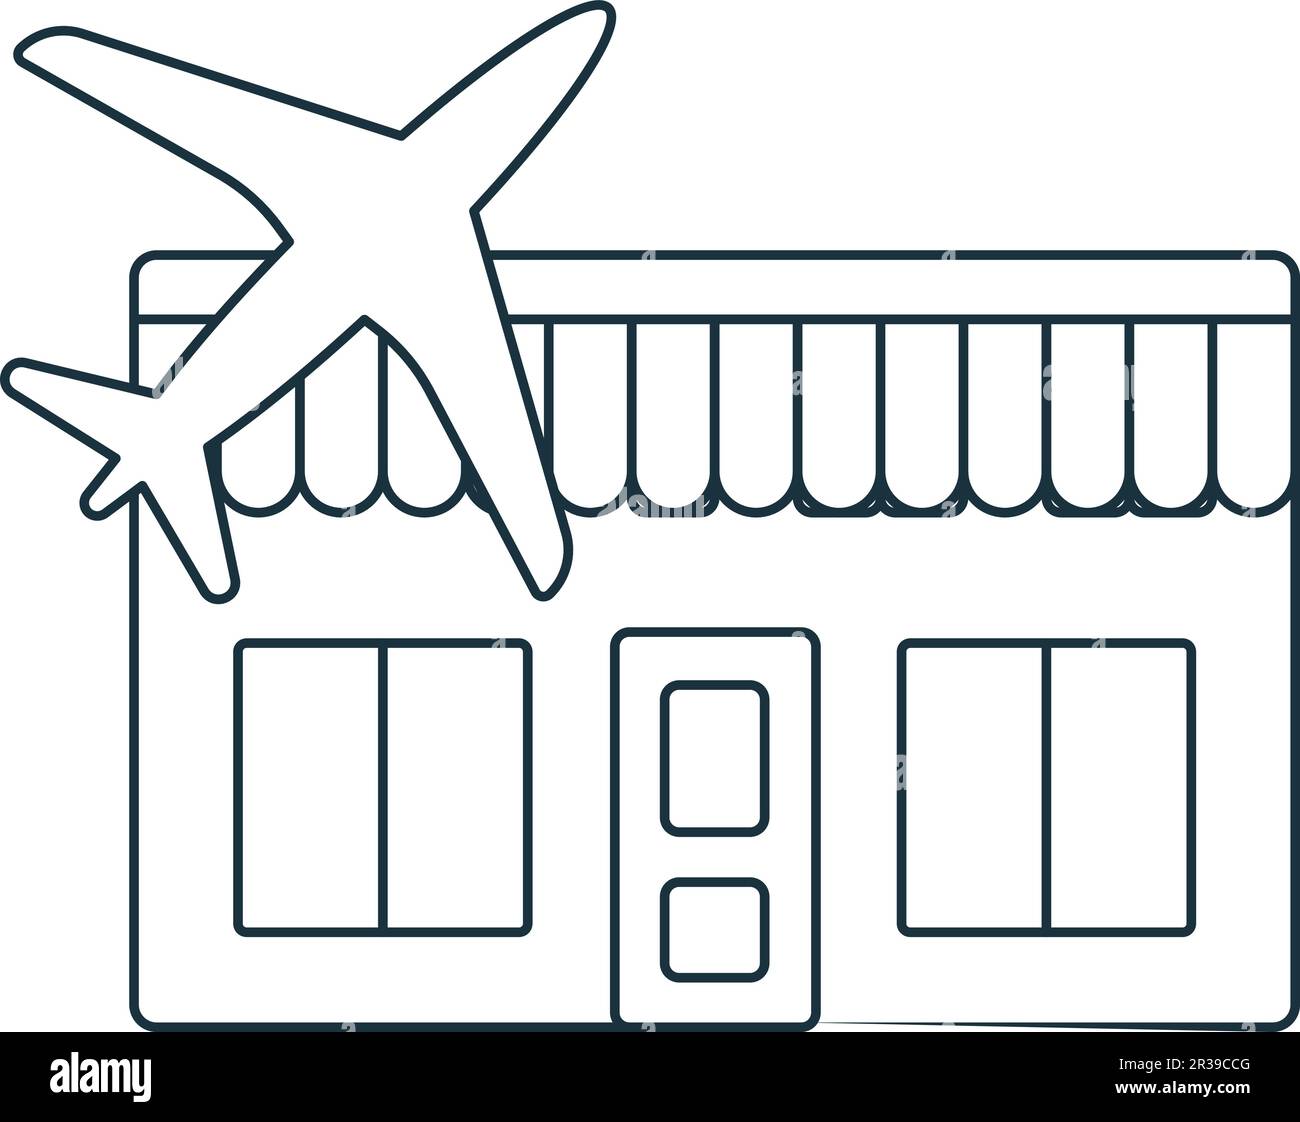 Icône hors service. Panneau monochrome simple de la collection d'éléments de l'aéroport. Icône duty free pour logo, modèles, web design et infographies. Illustration de Vecteur